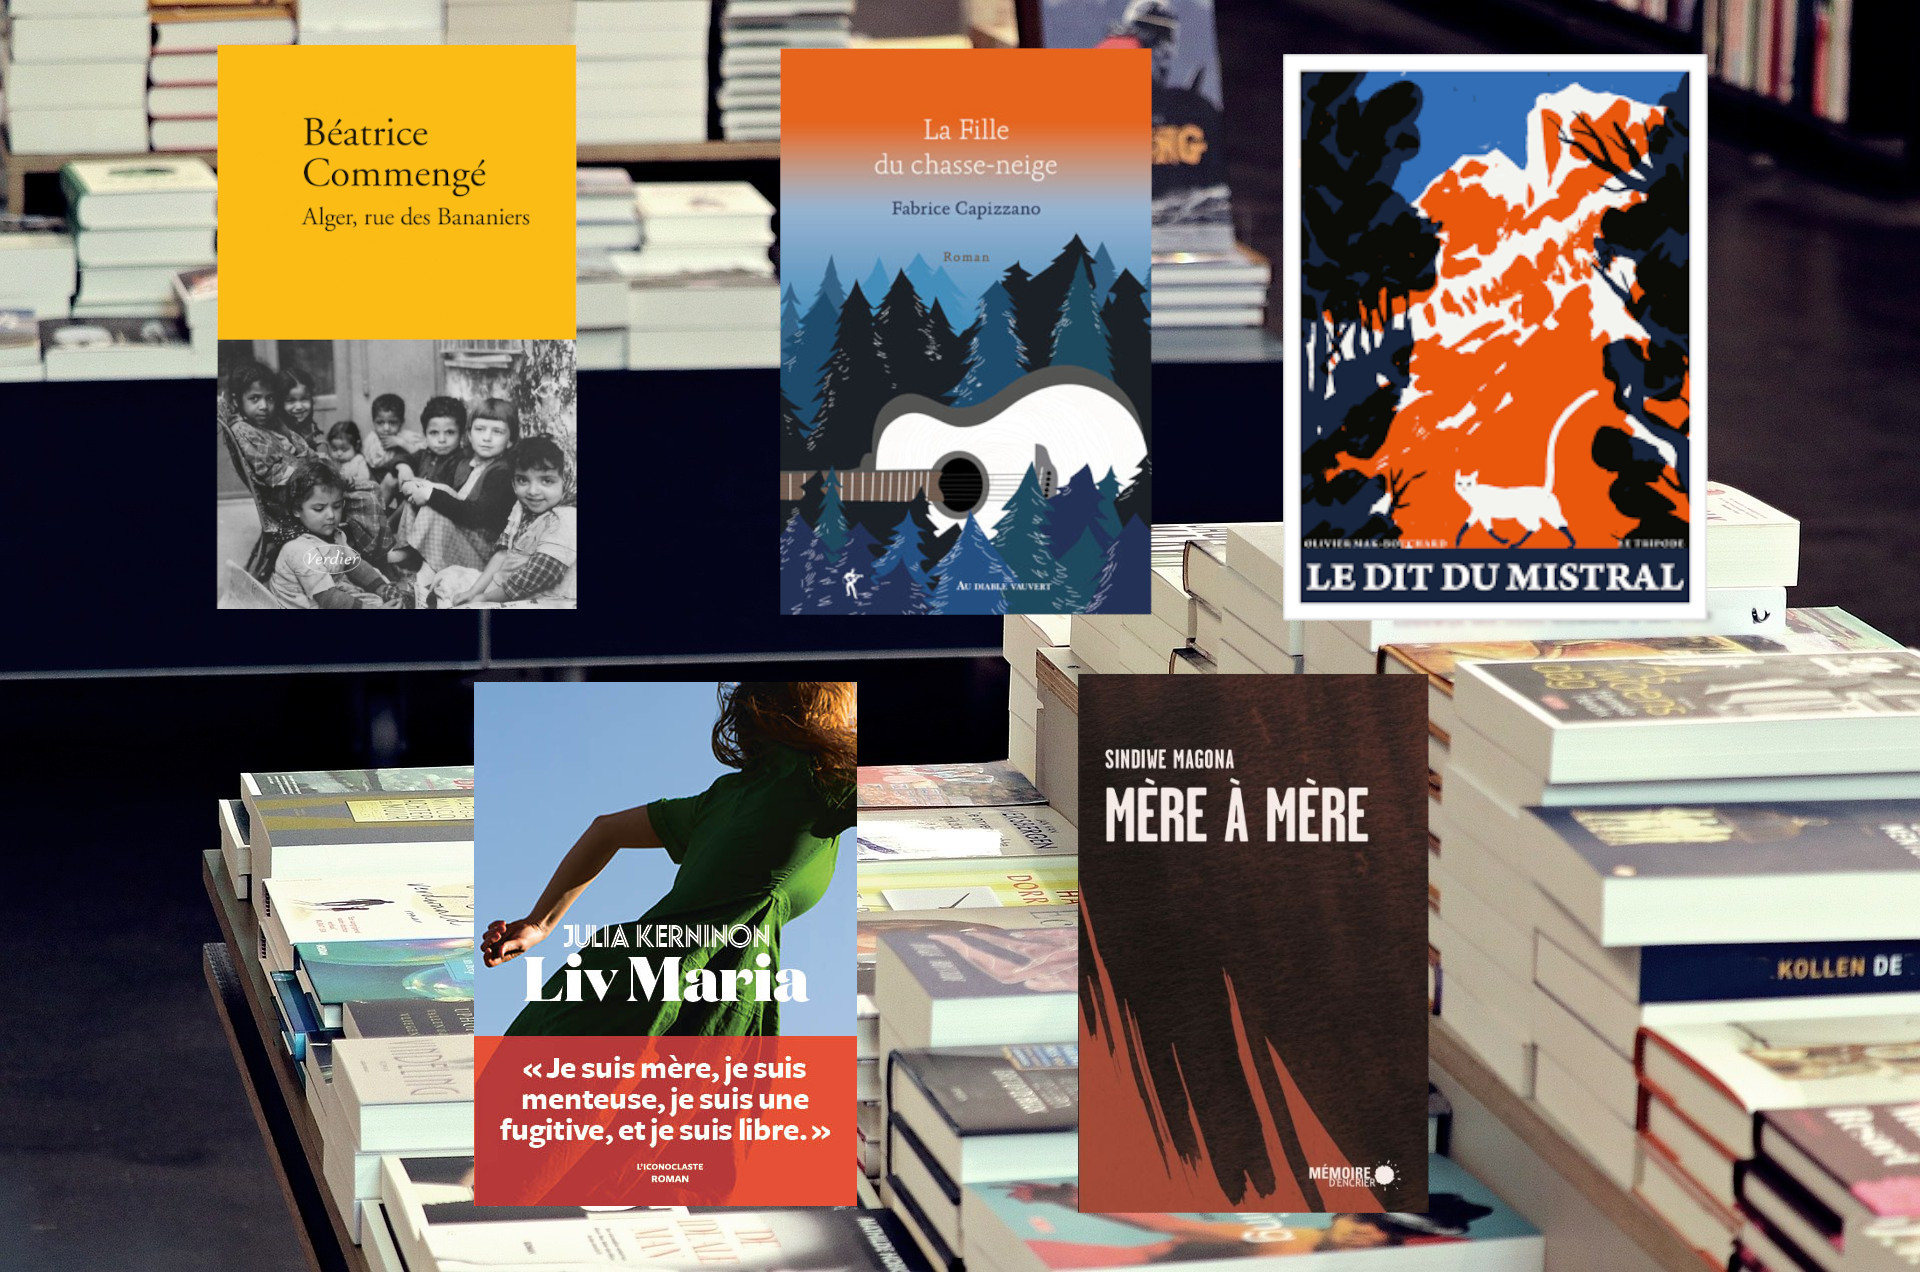 Livres sélectionnés par Fabrice Baumann : Alger, rue des Bananiers, Liv Maria, Le dit du Mistral, Mère à Mère